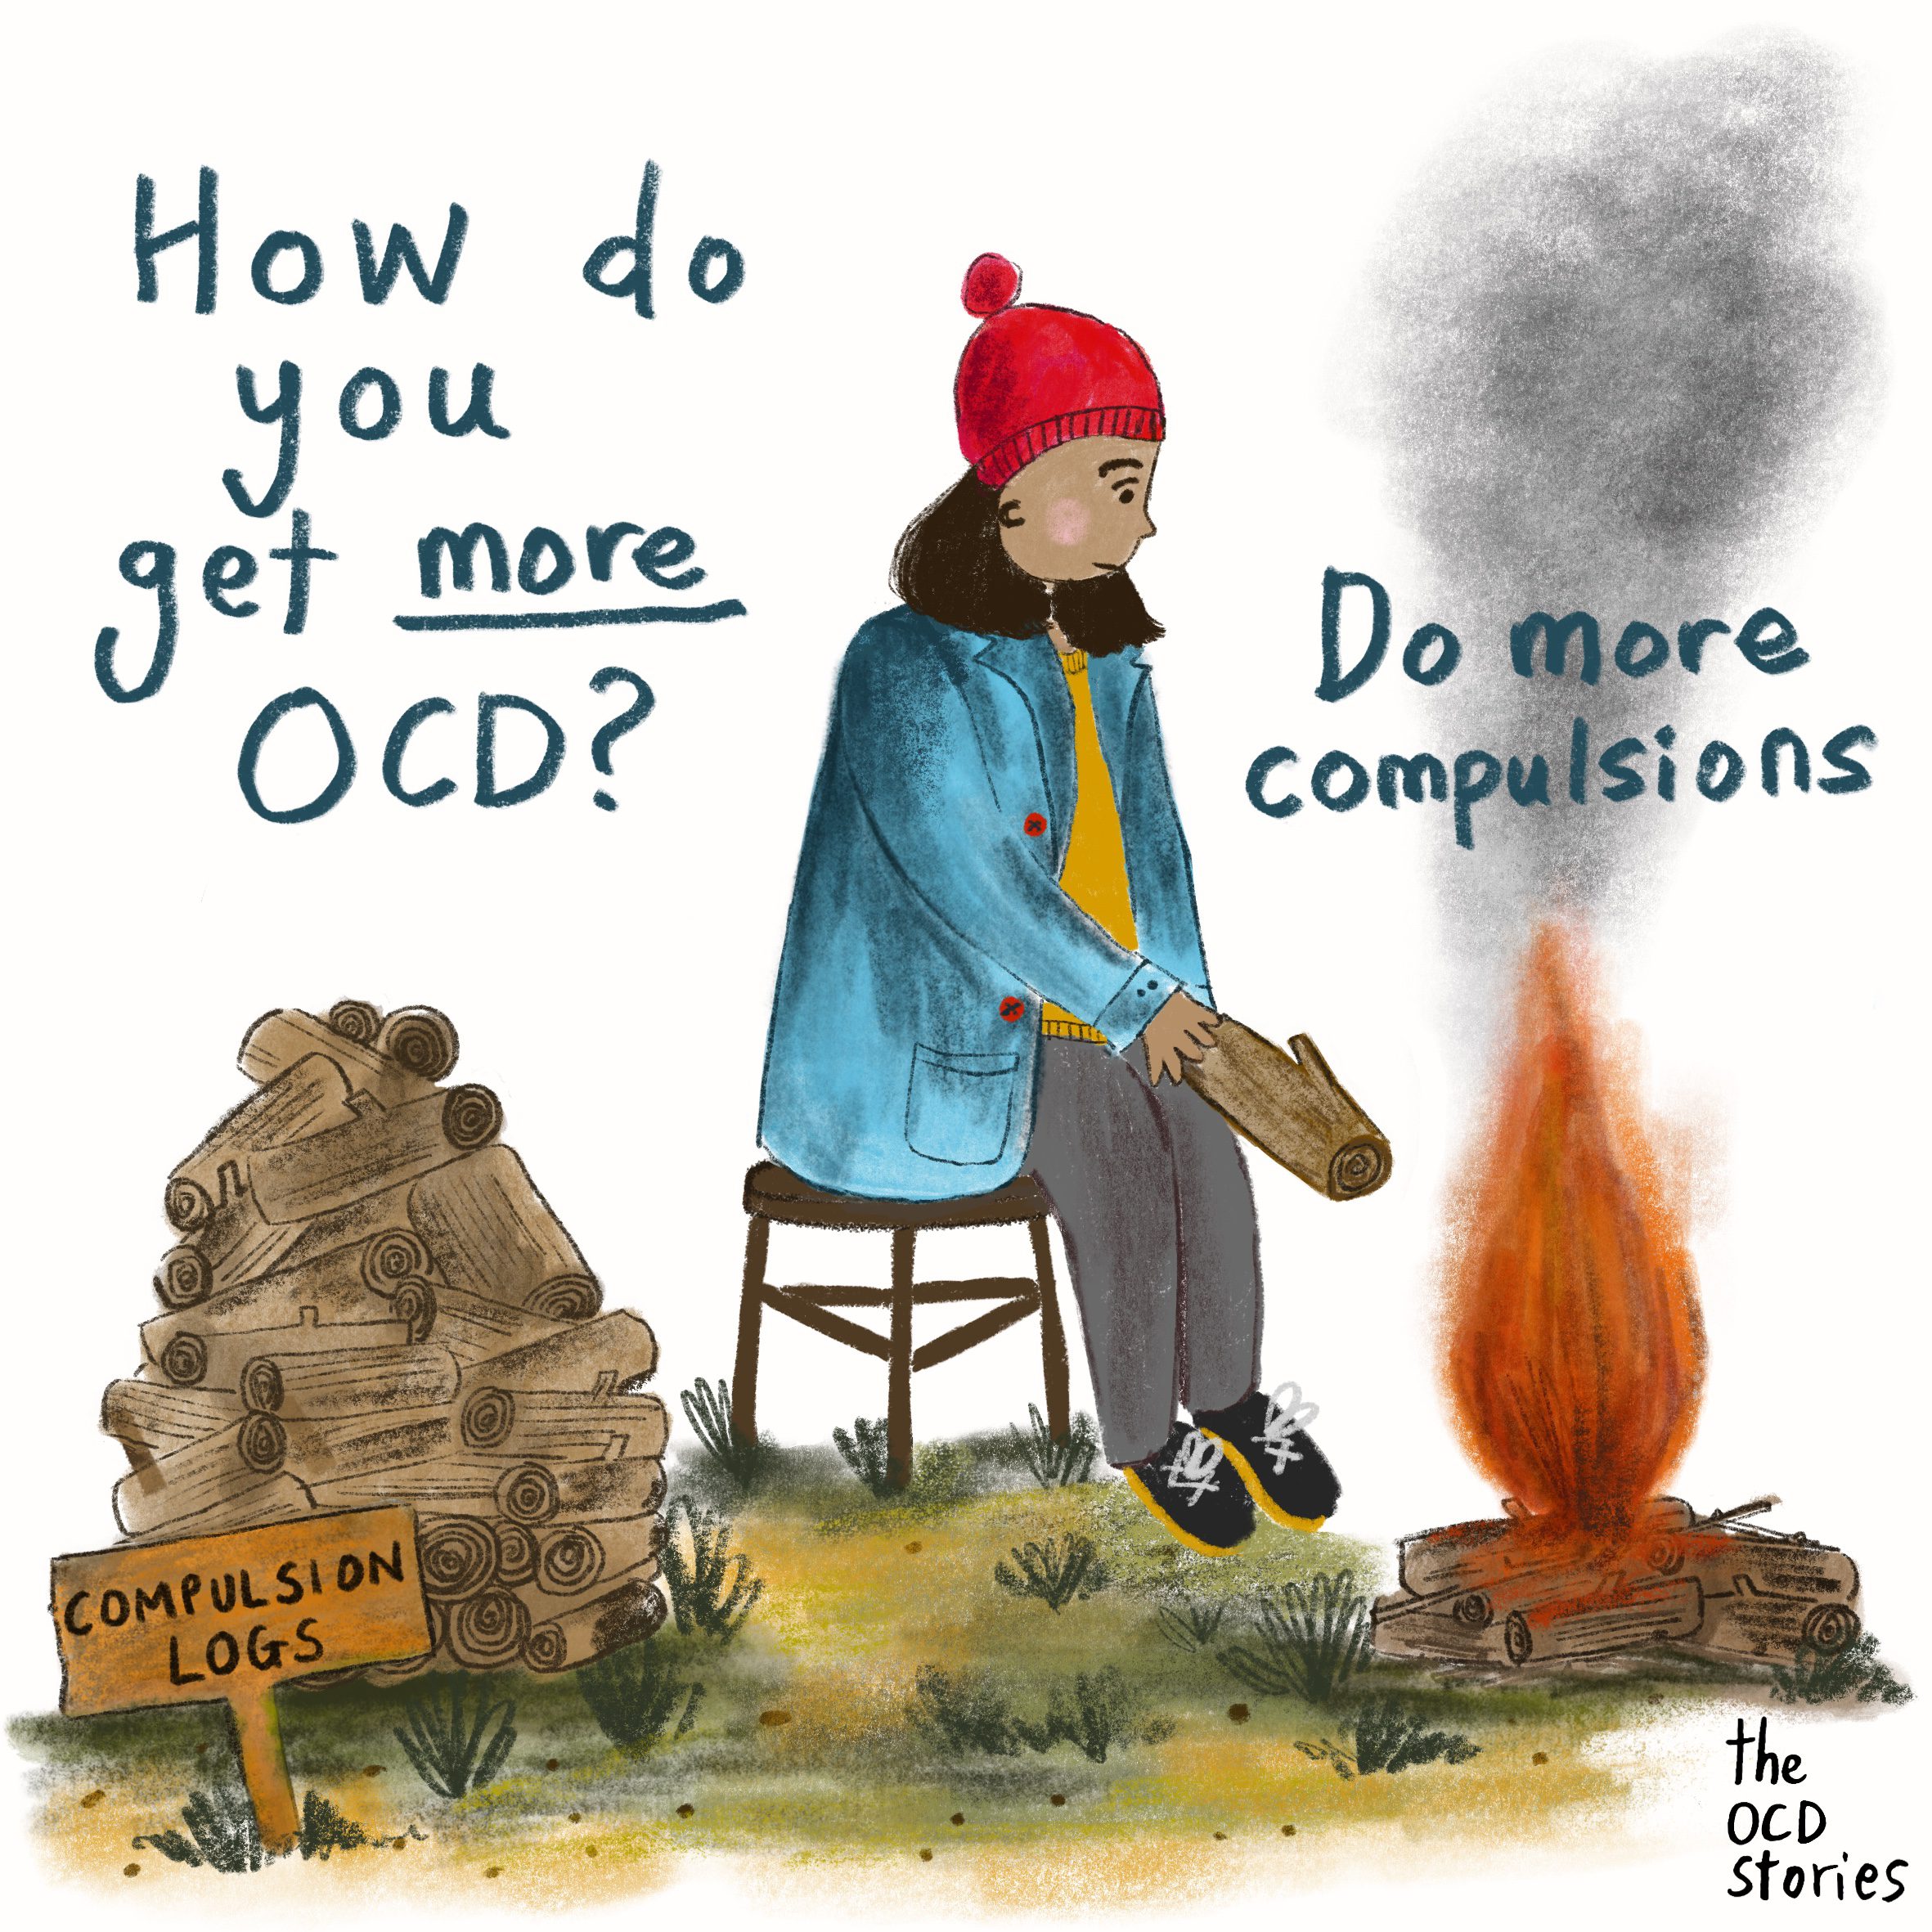 How do you get more OCD?